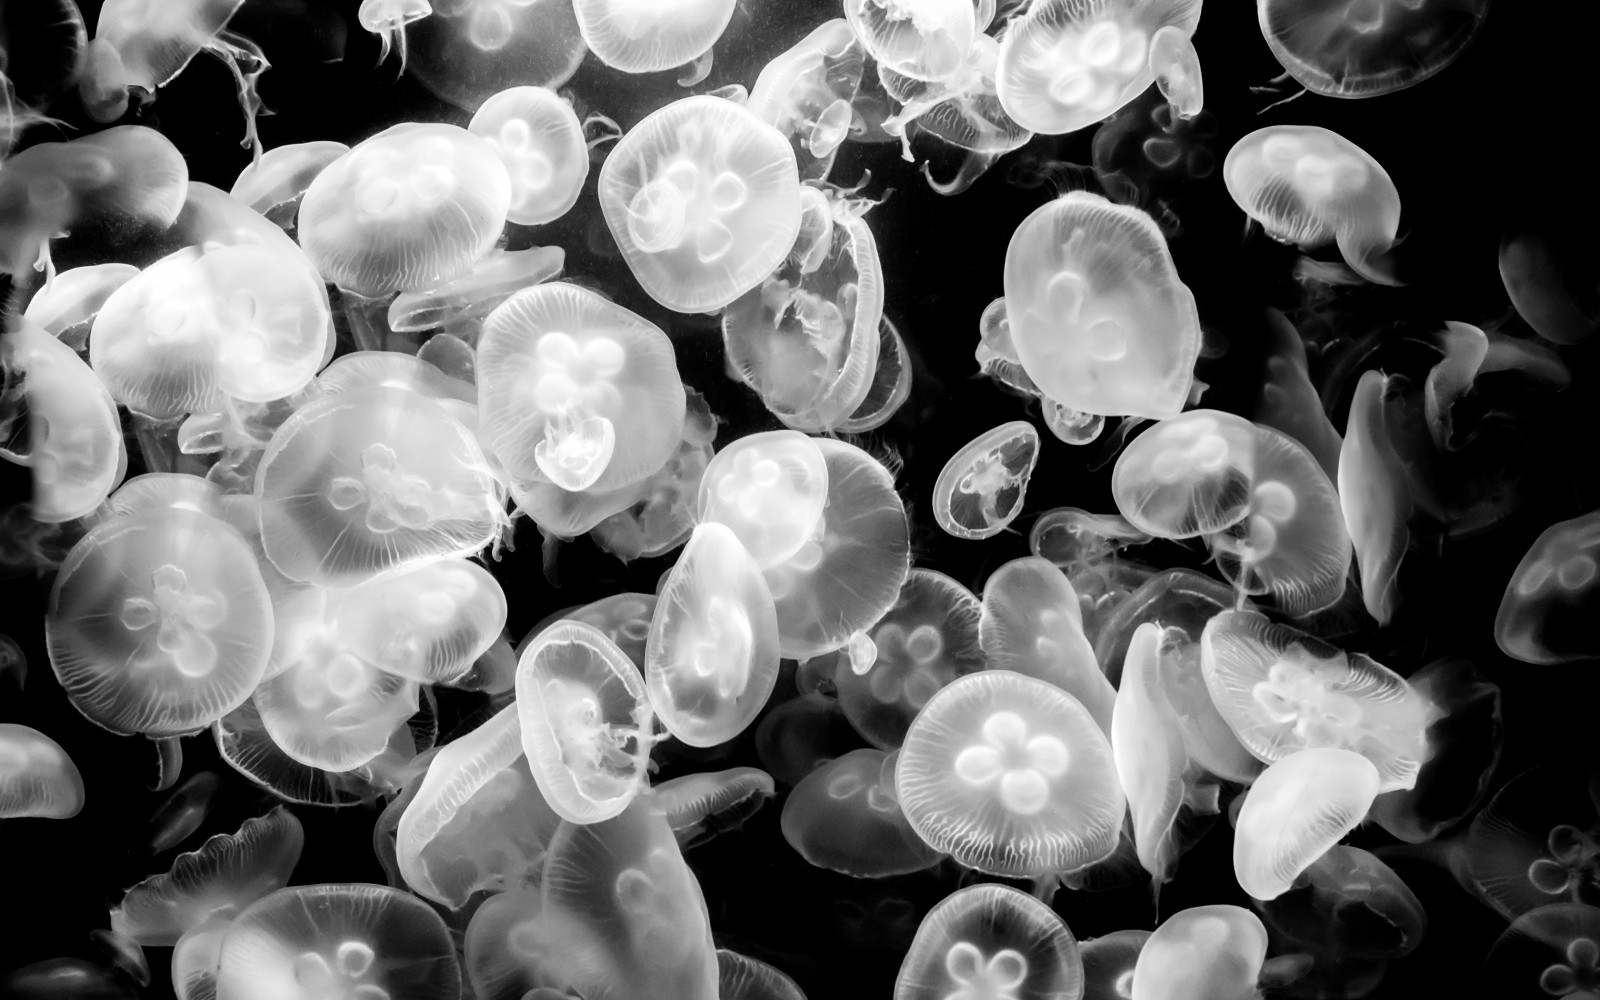 con sứa, thế giới dưới nước, con sứa. Thủy cung Berlin